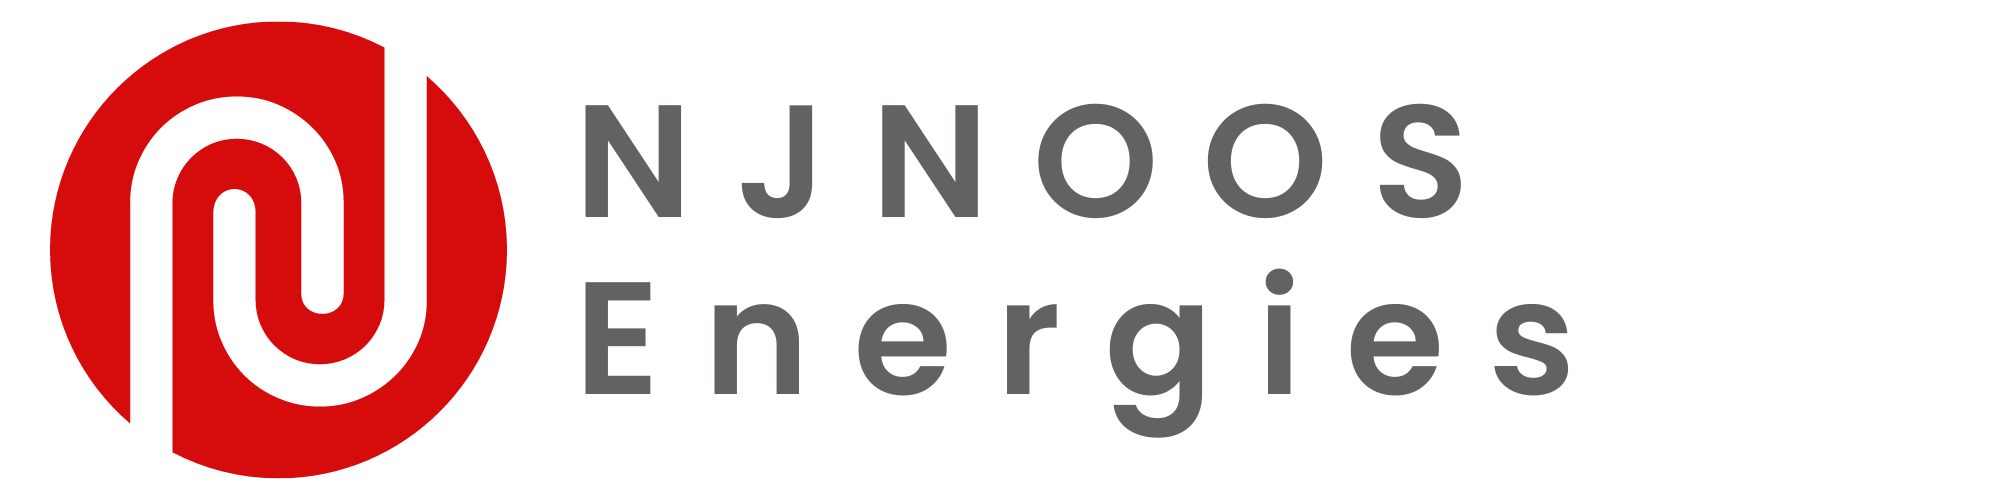 NJNoos Energies